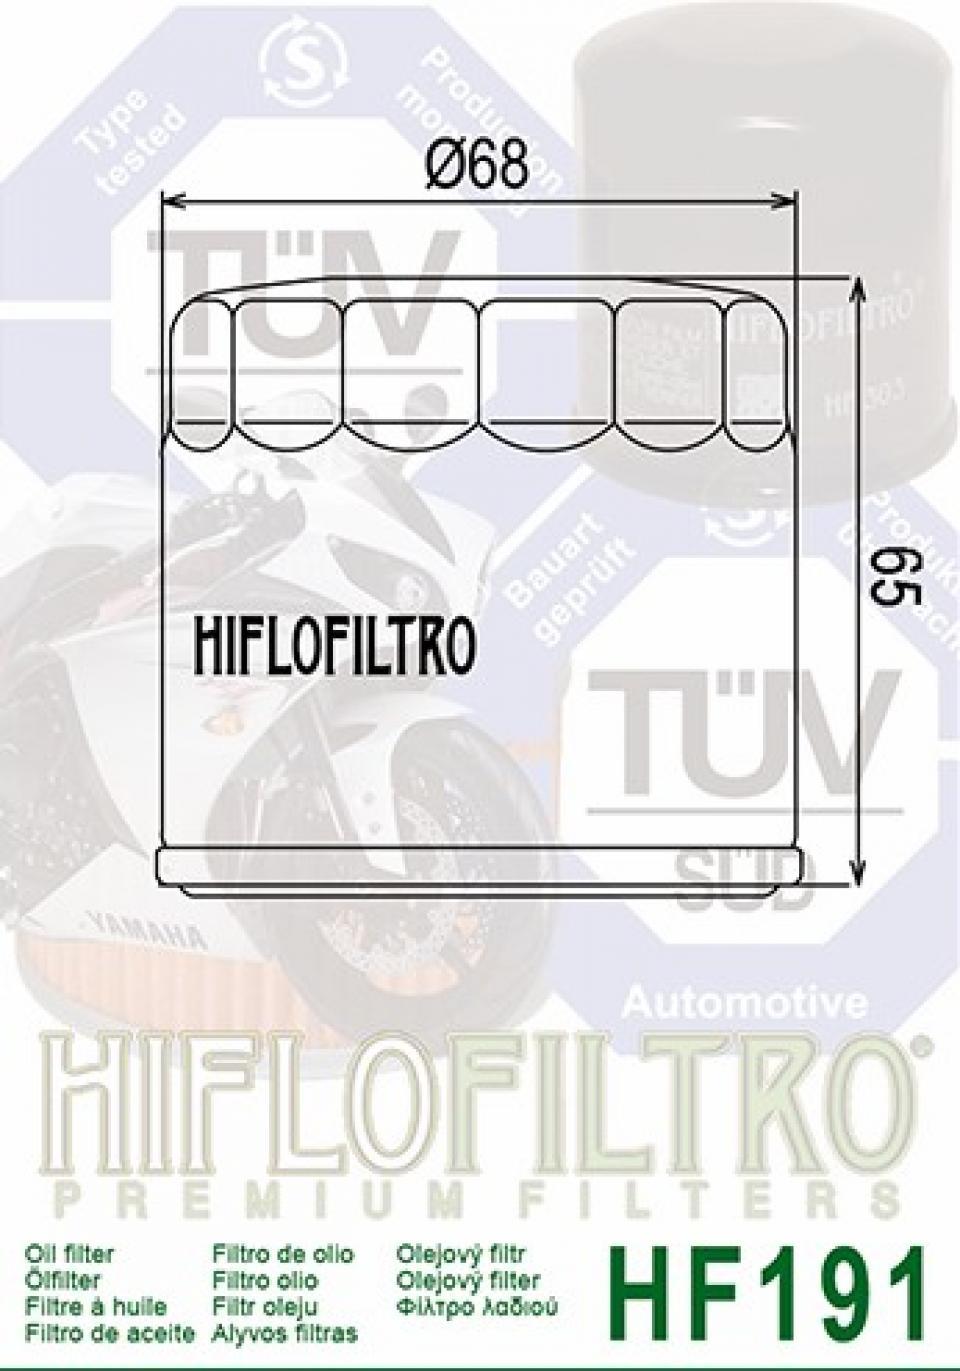 Filtre à huile Hiflofiltro pour Moto Benelli 600 BN GT 2015 à 2016 Neuf